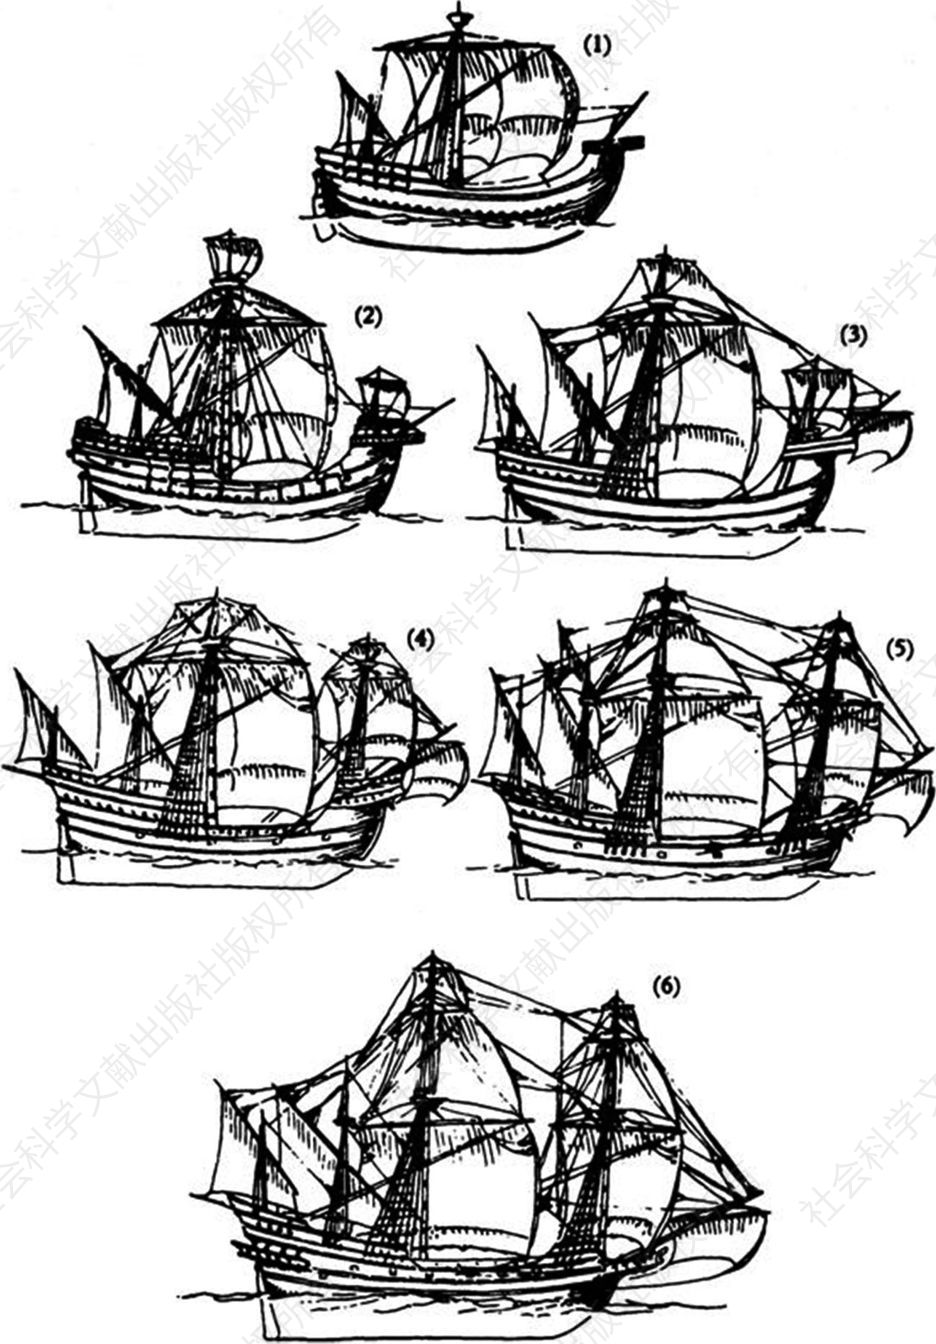 1430～1600年帆船装备的演进。（1）约1430年；（2）约1450年；（3）约1500年；（4）约1530年；（5）约1560年；（6）约1600年。